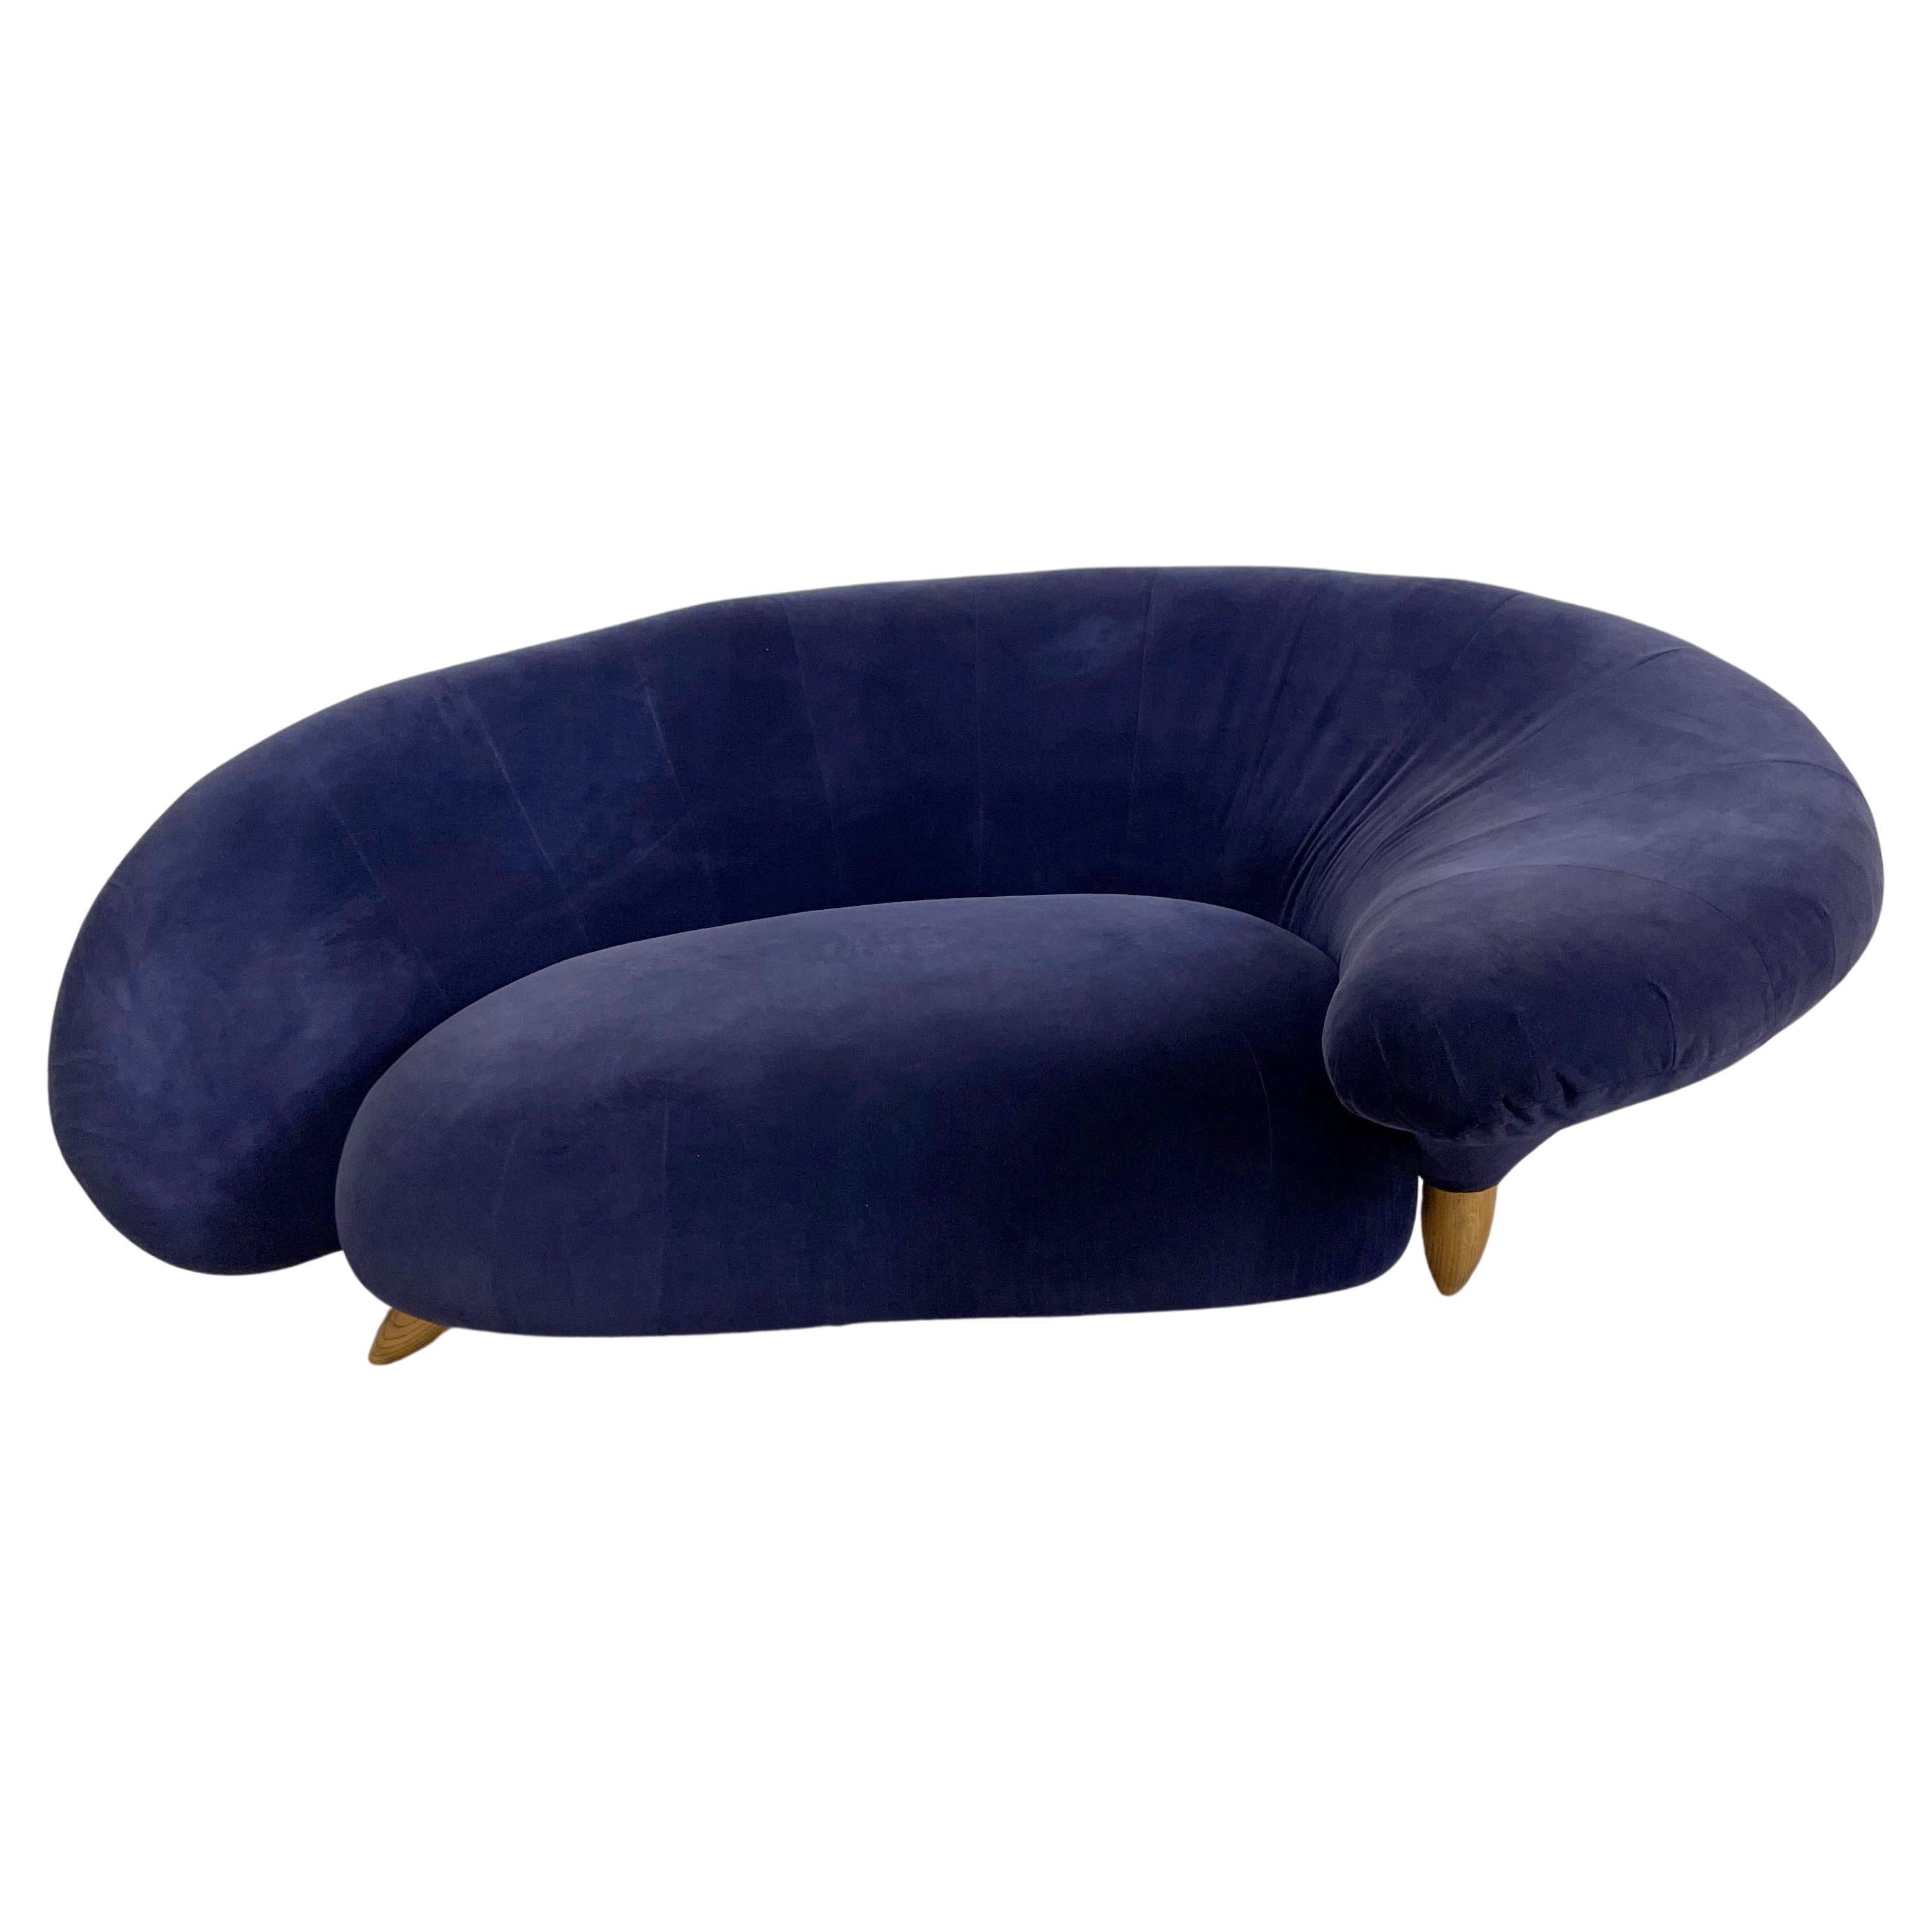 Canapé moderne du 20ème siècle en velours courbé serpentin de couleur bleu marine